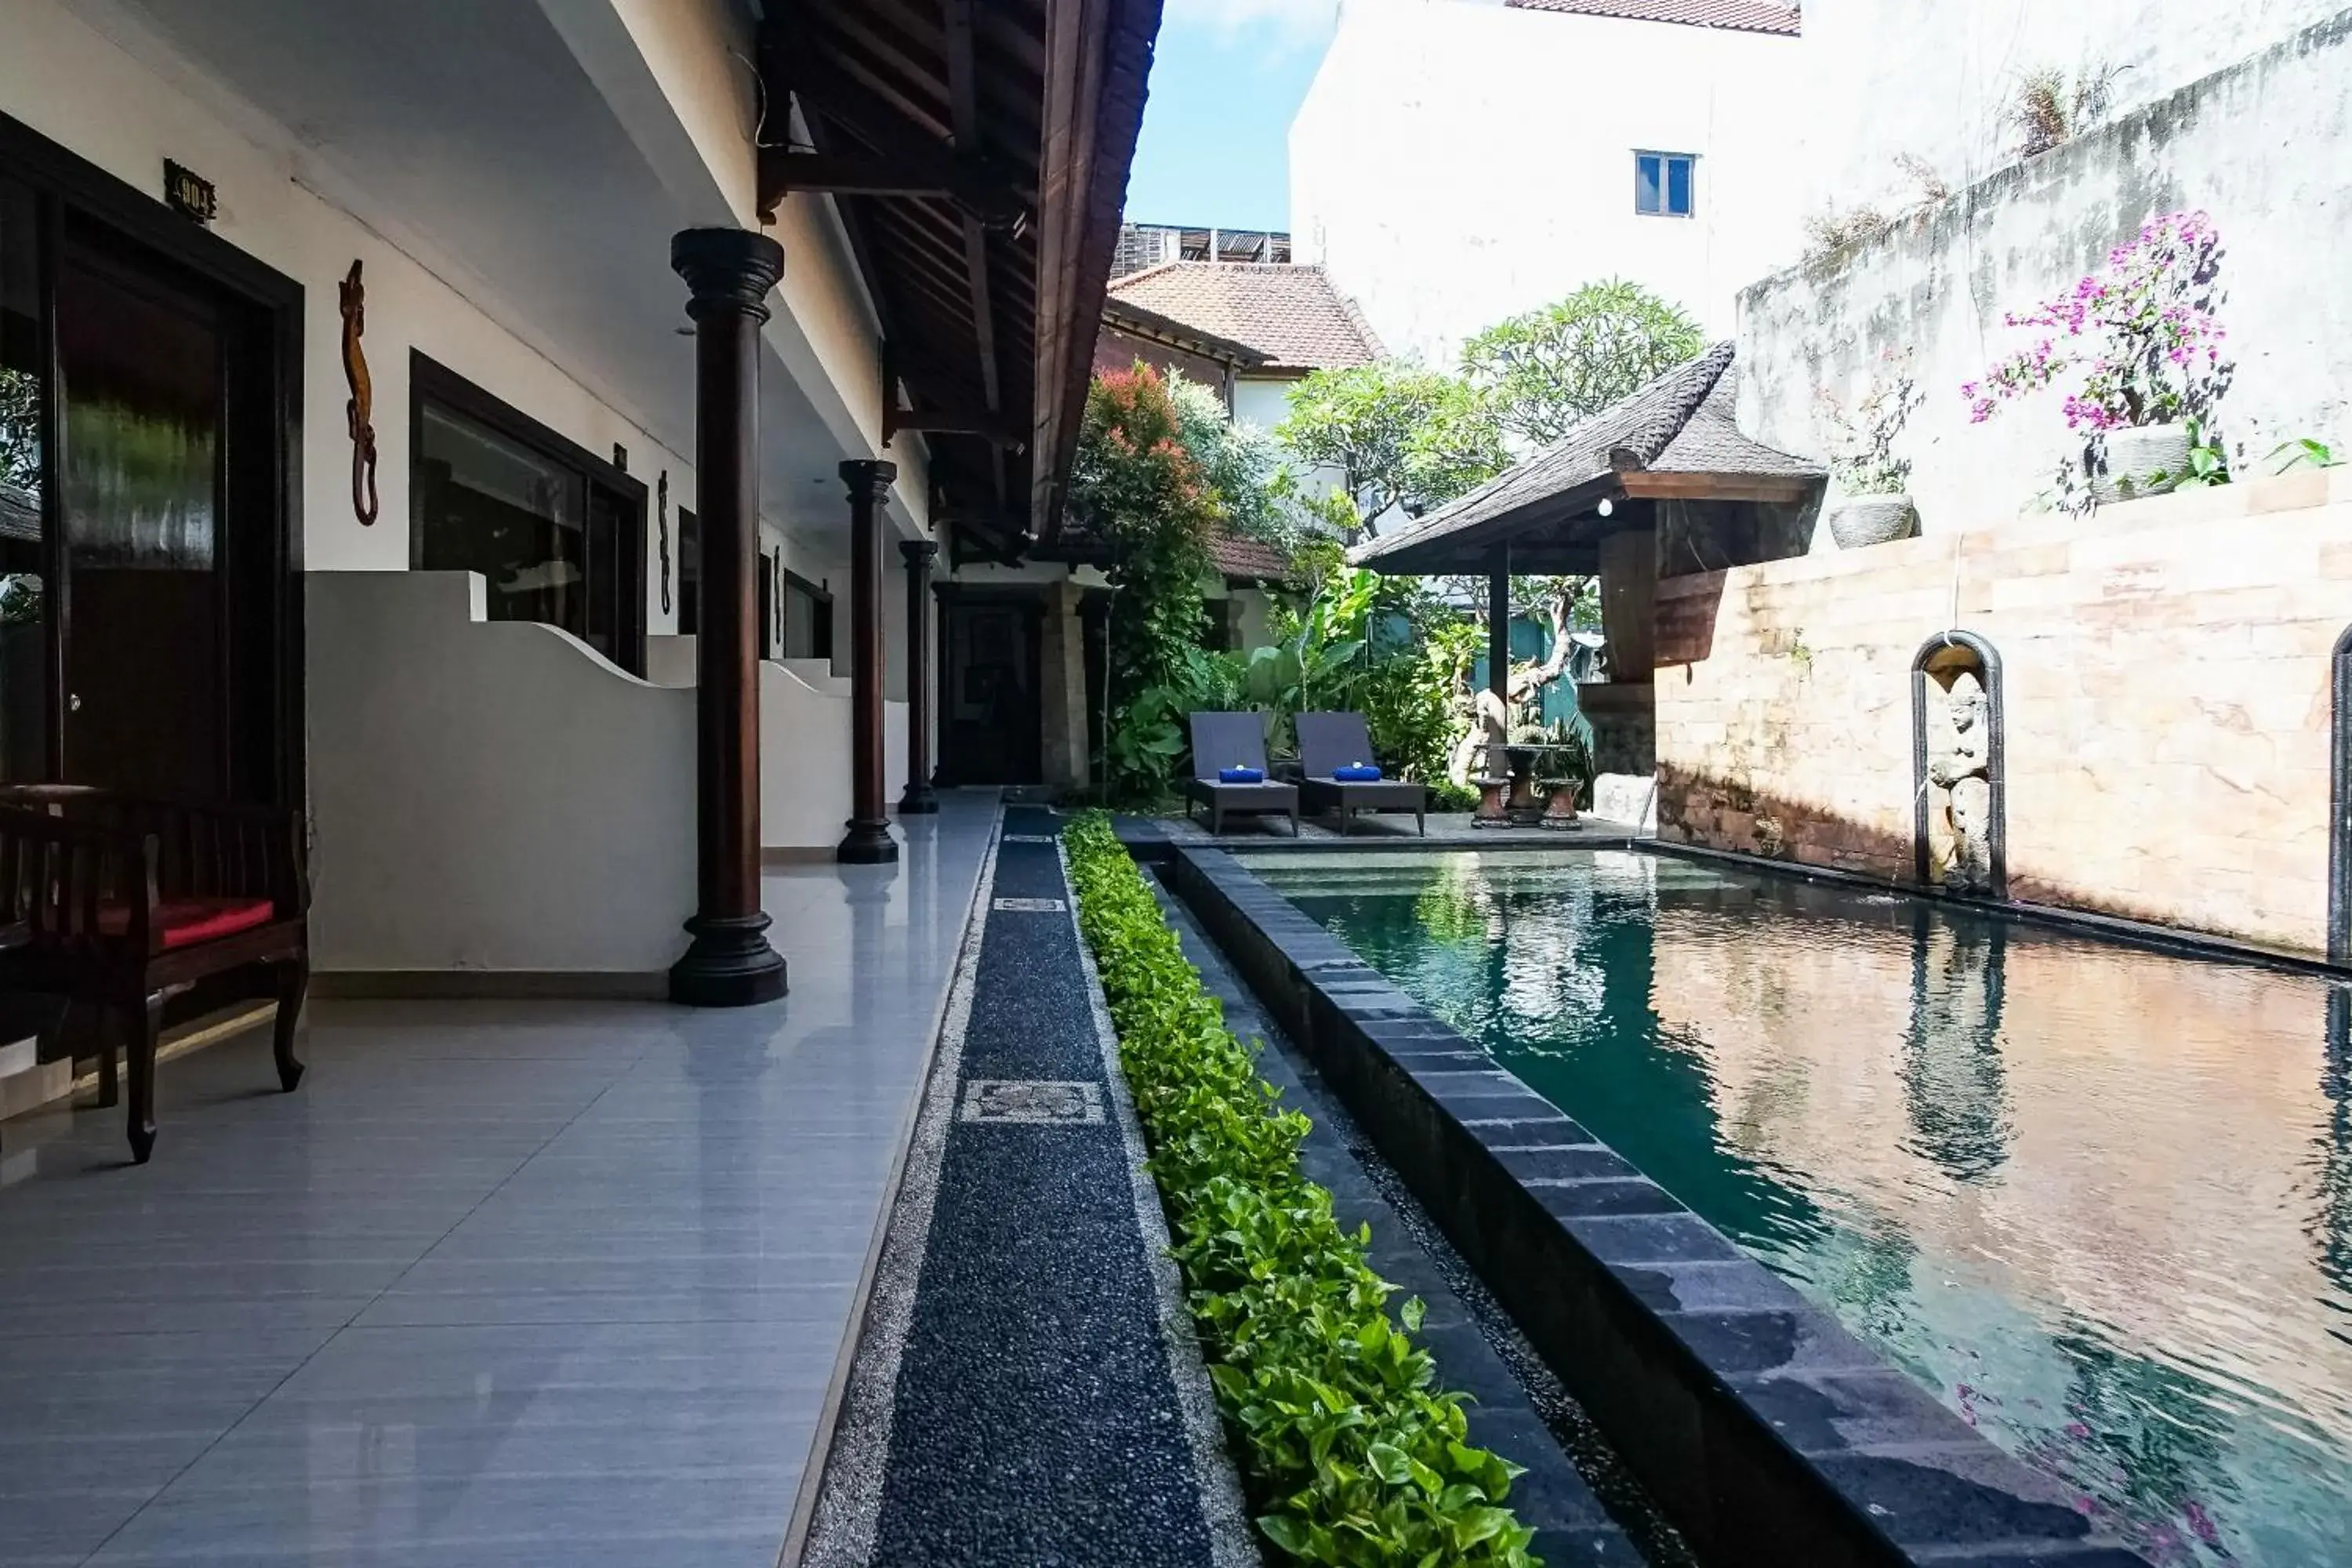 Property building, Swimming Pool in Taman Ayu Legian